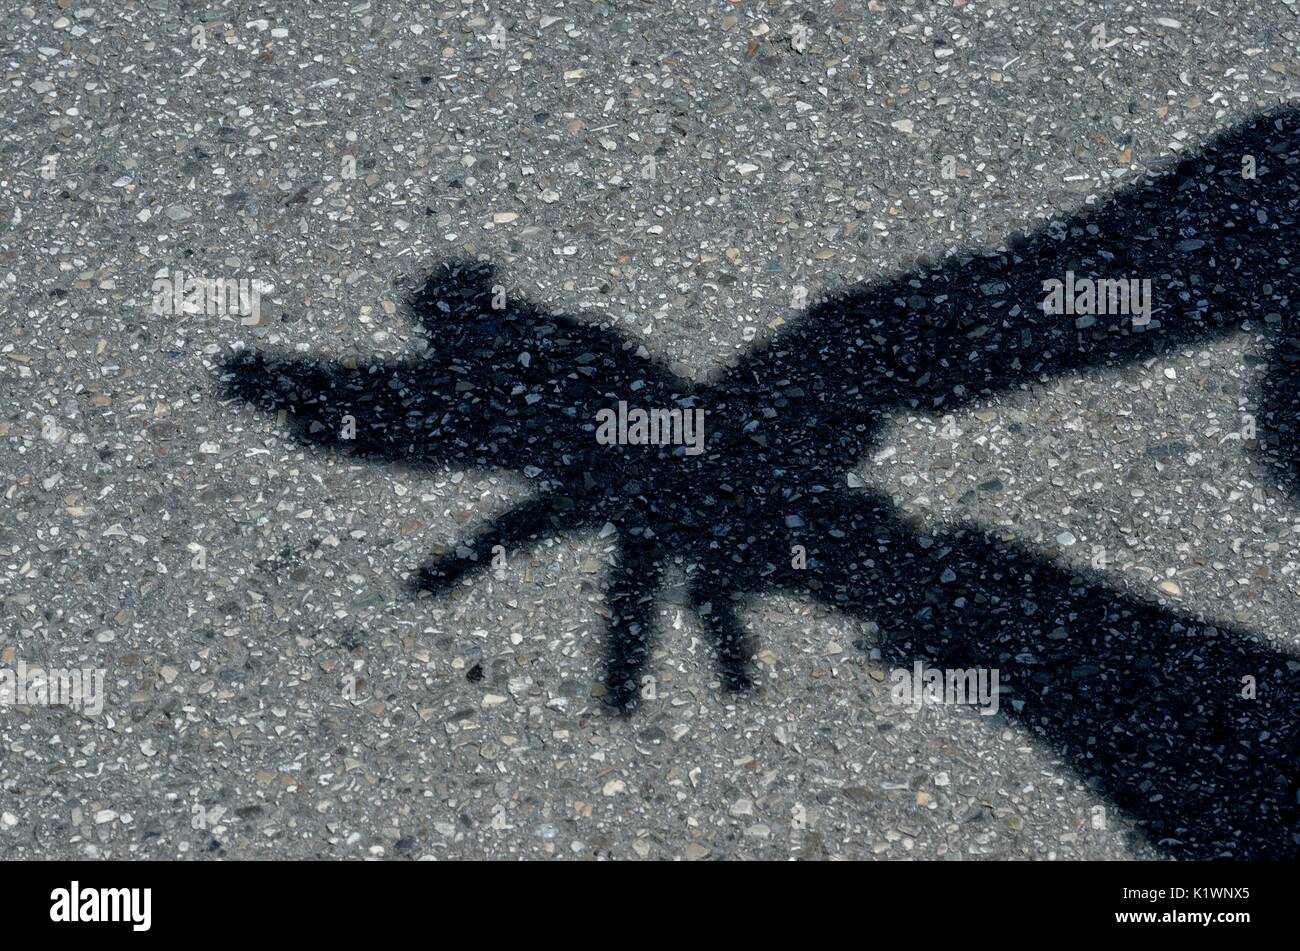 L'Art à la main - création d'un graphique depuis d'ombres sur la surface de la rue à l'aide de mains, Mestre, Italie, Europe Banque D'Images